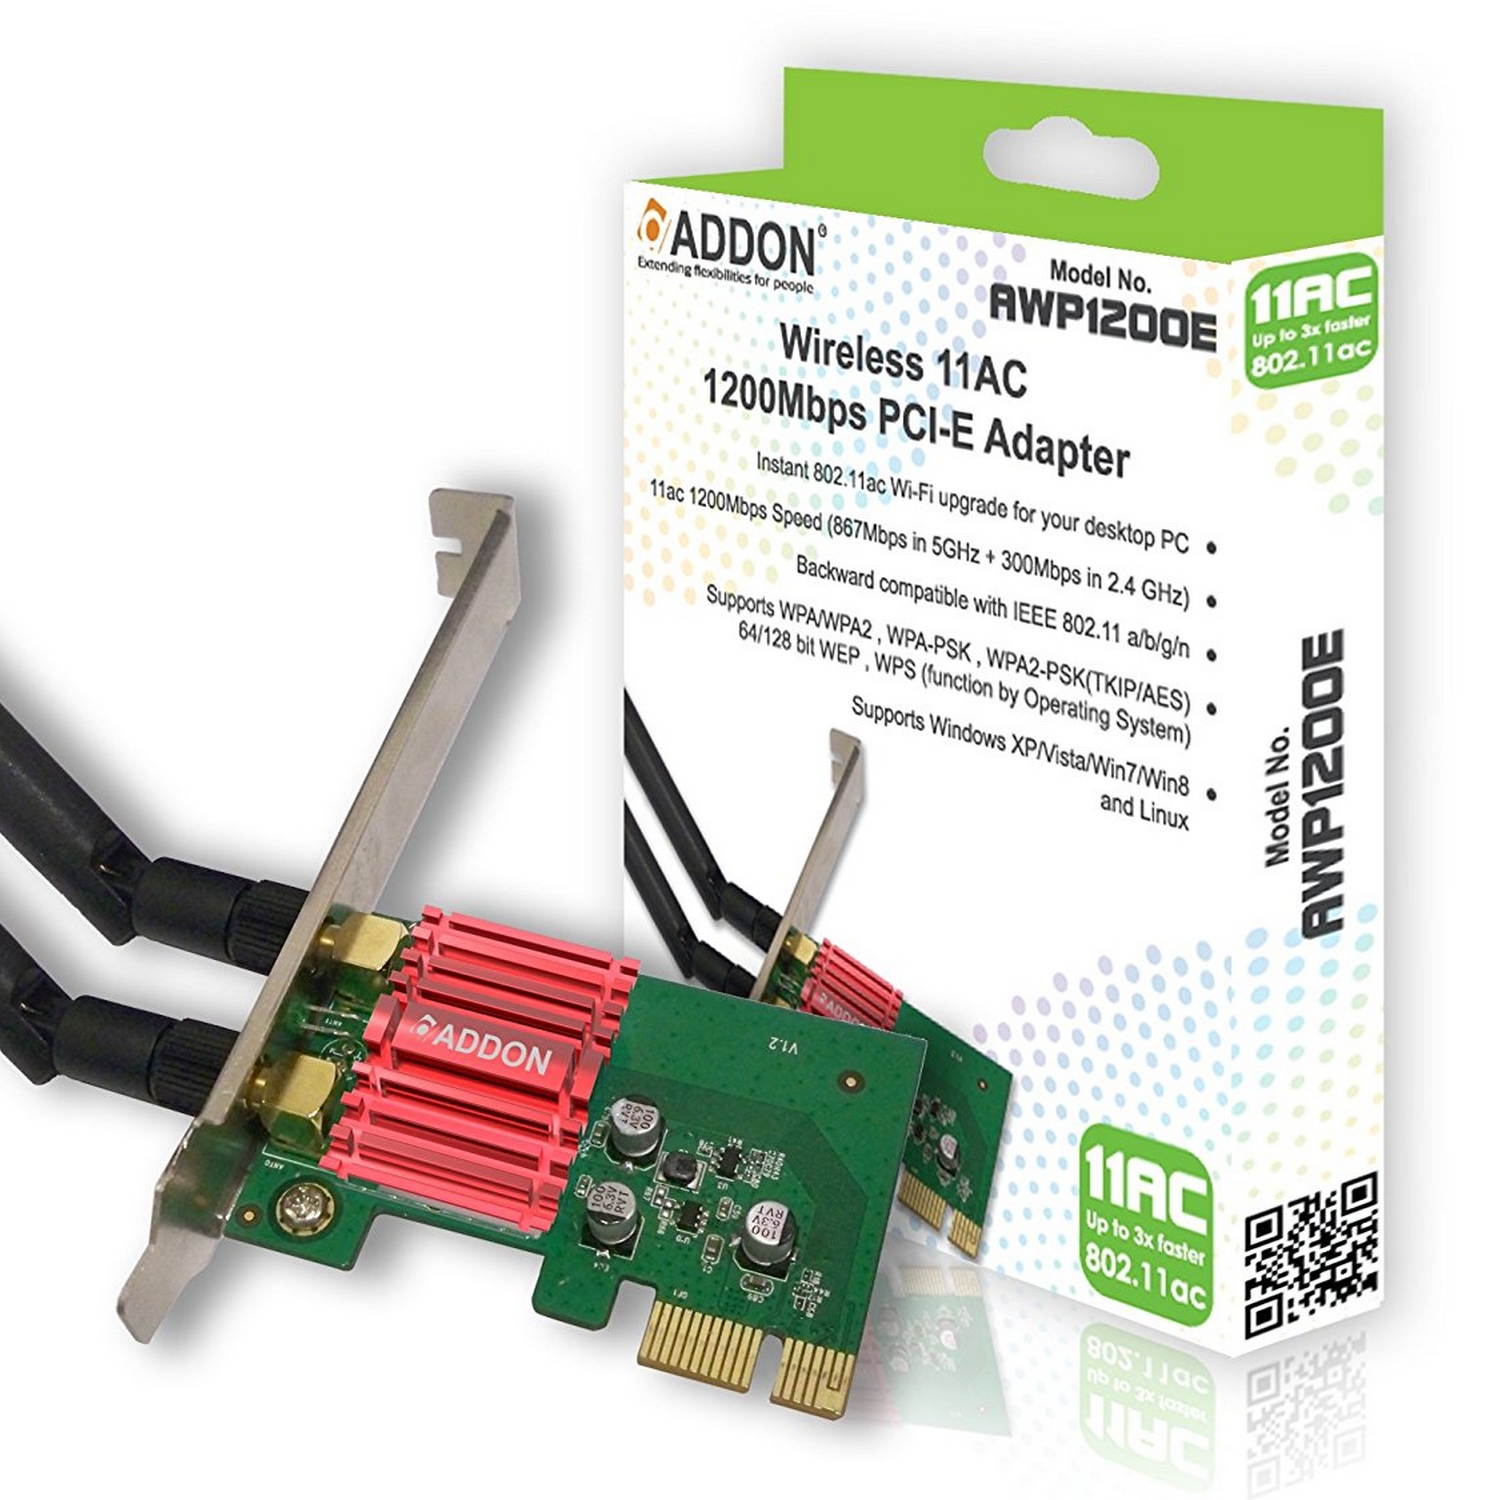 Addon - ADDON Wireless AC Dual Band 1200Mbps PCI-e Adapter (AWP1200E)